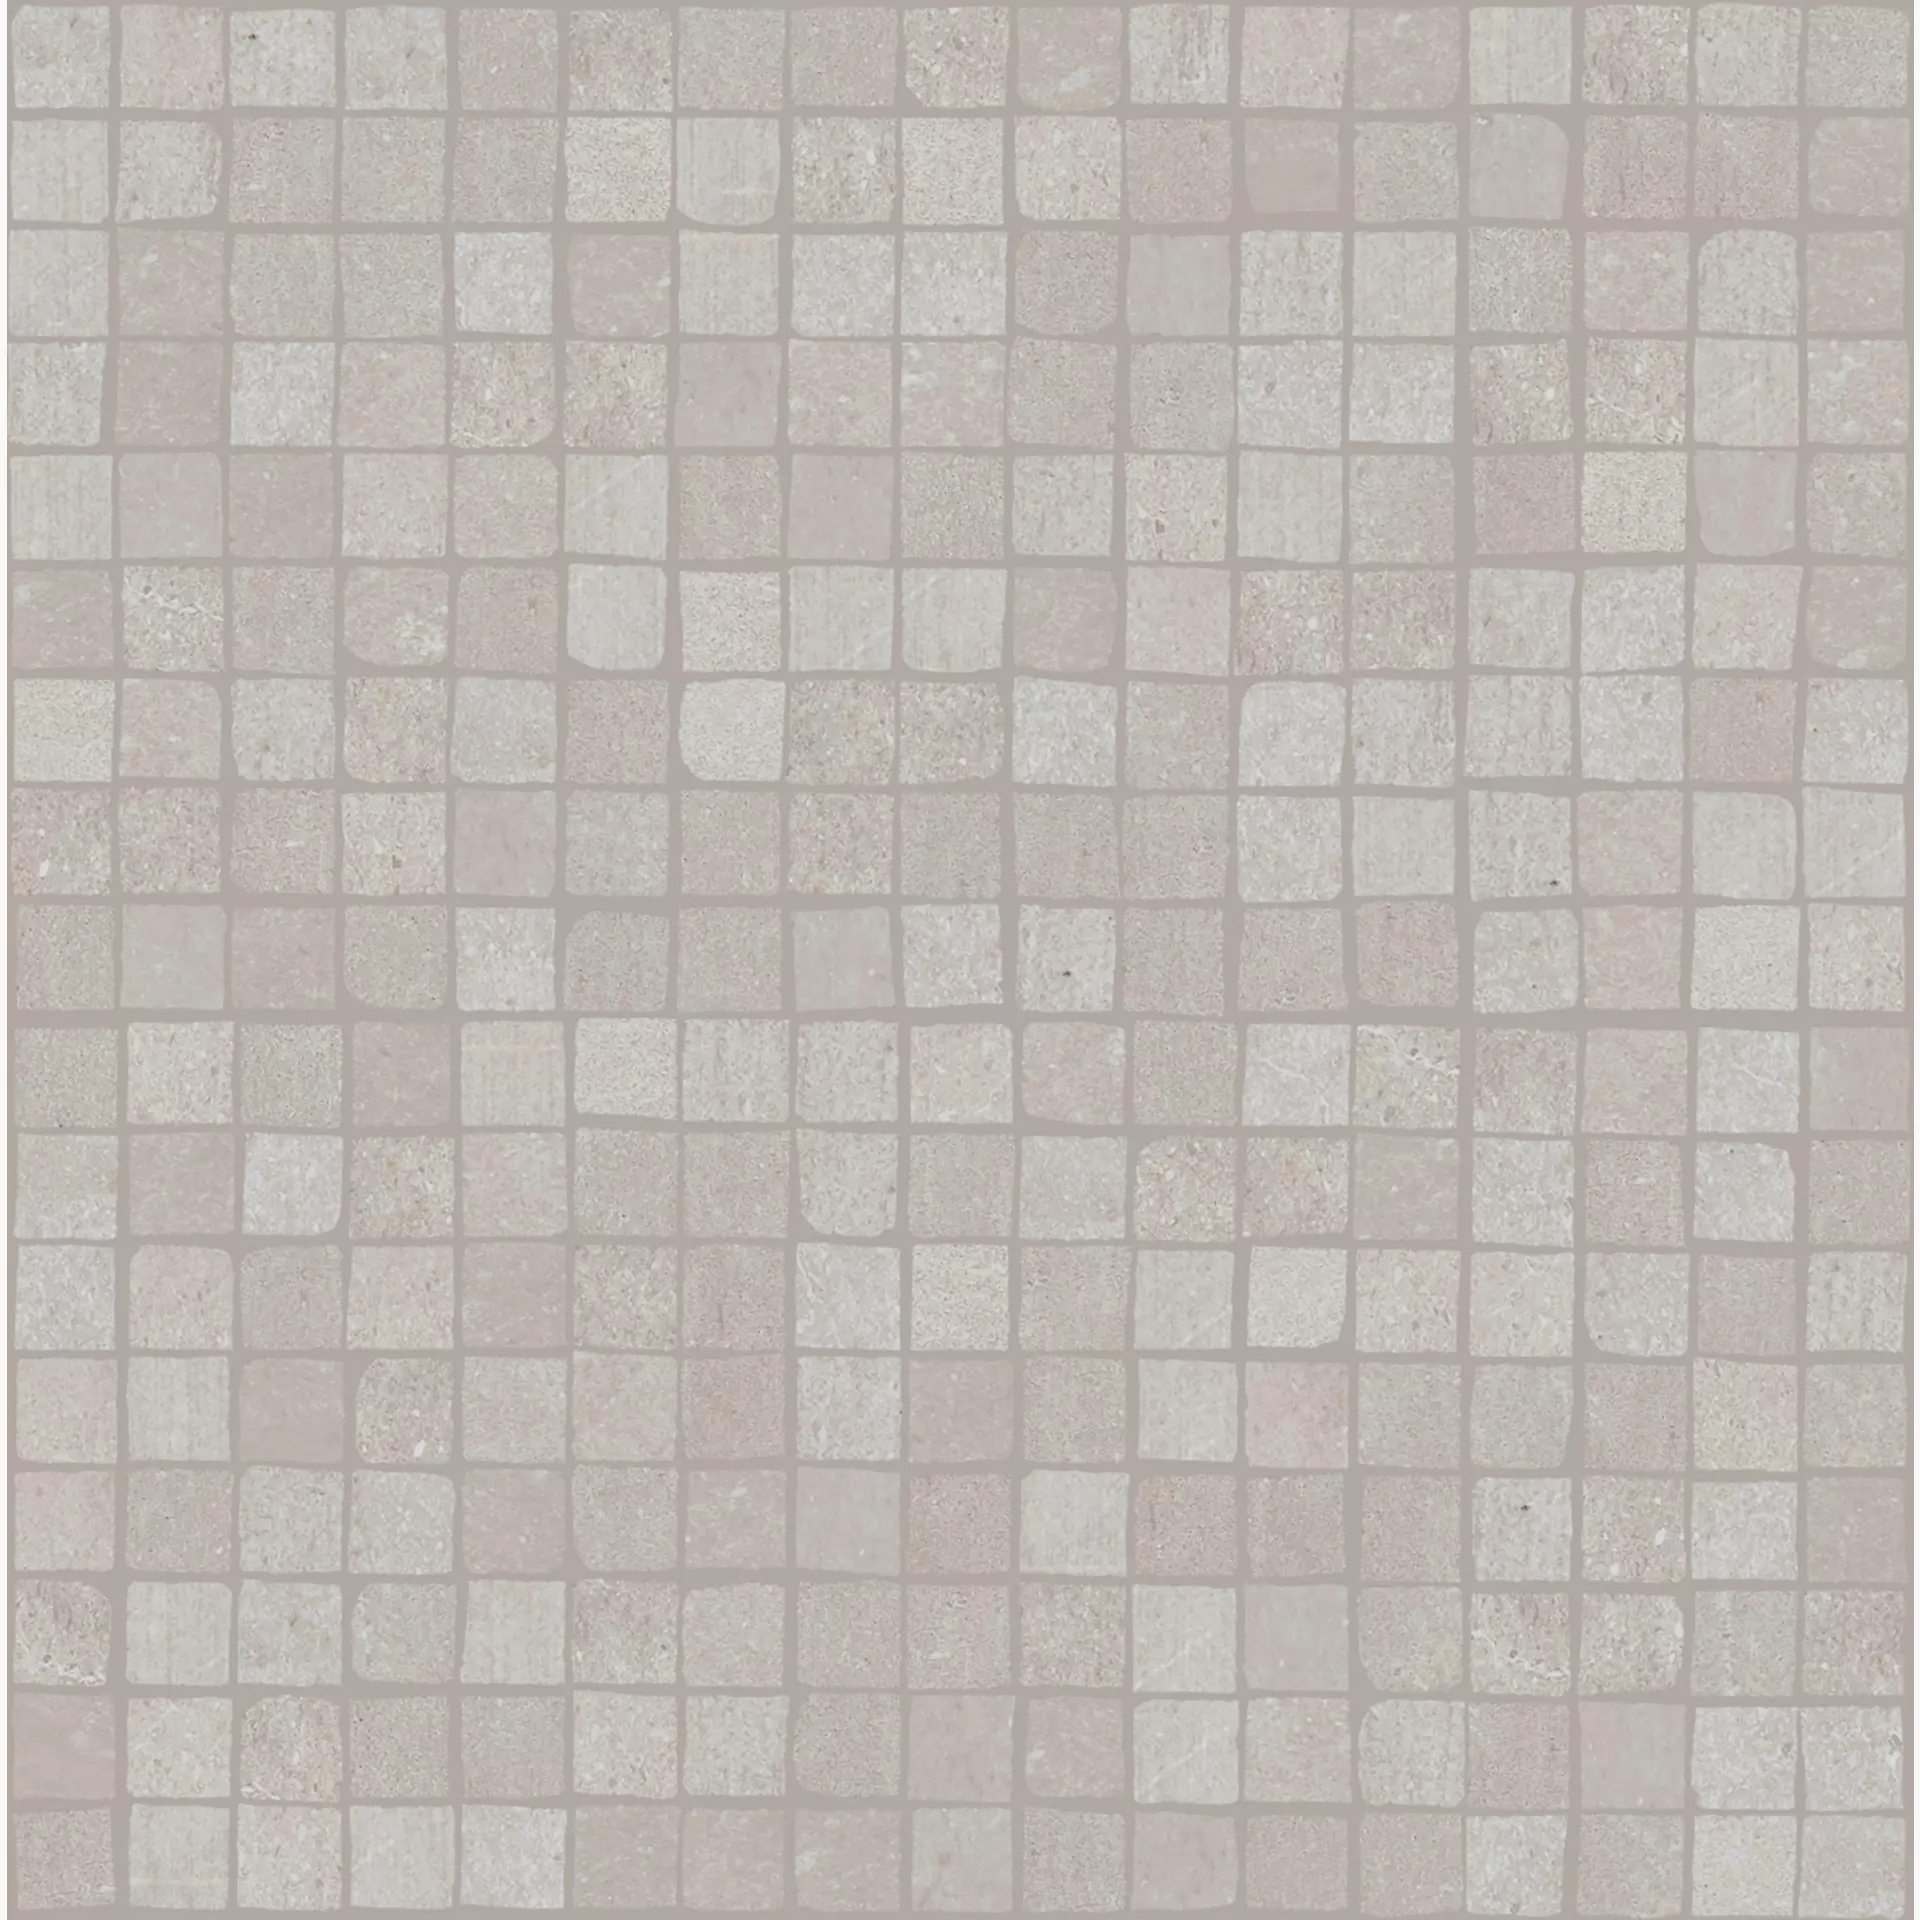 Bodenfliese,Wandfliese Marazzi Plaster Grey Naturale – Matt Grey MMCK matt natur 30x30cm Mosaik 9,5mm